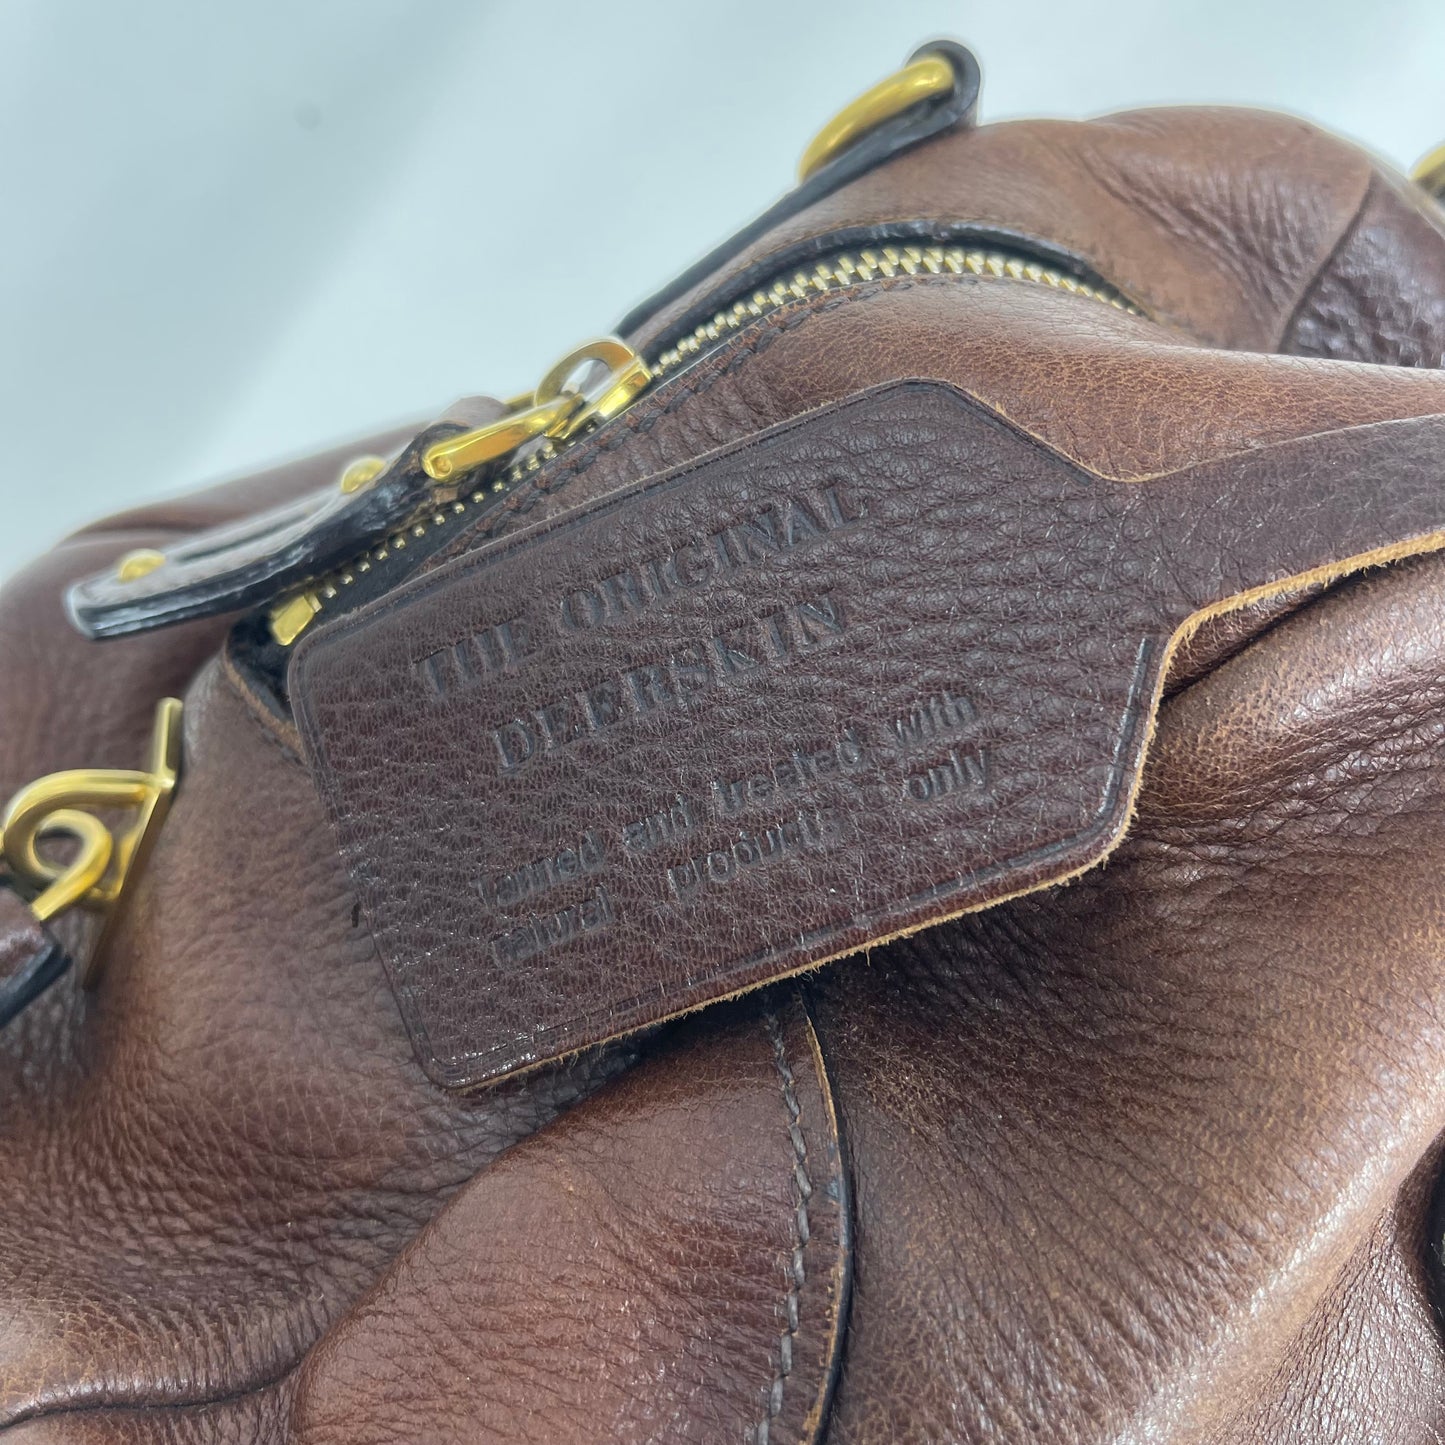 Authentic Prada Brown Deerskin Shoulder Bag